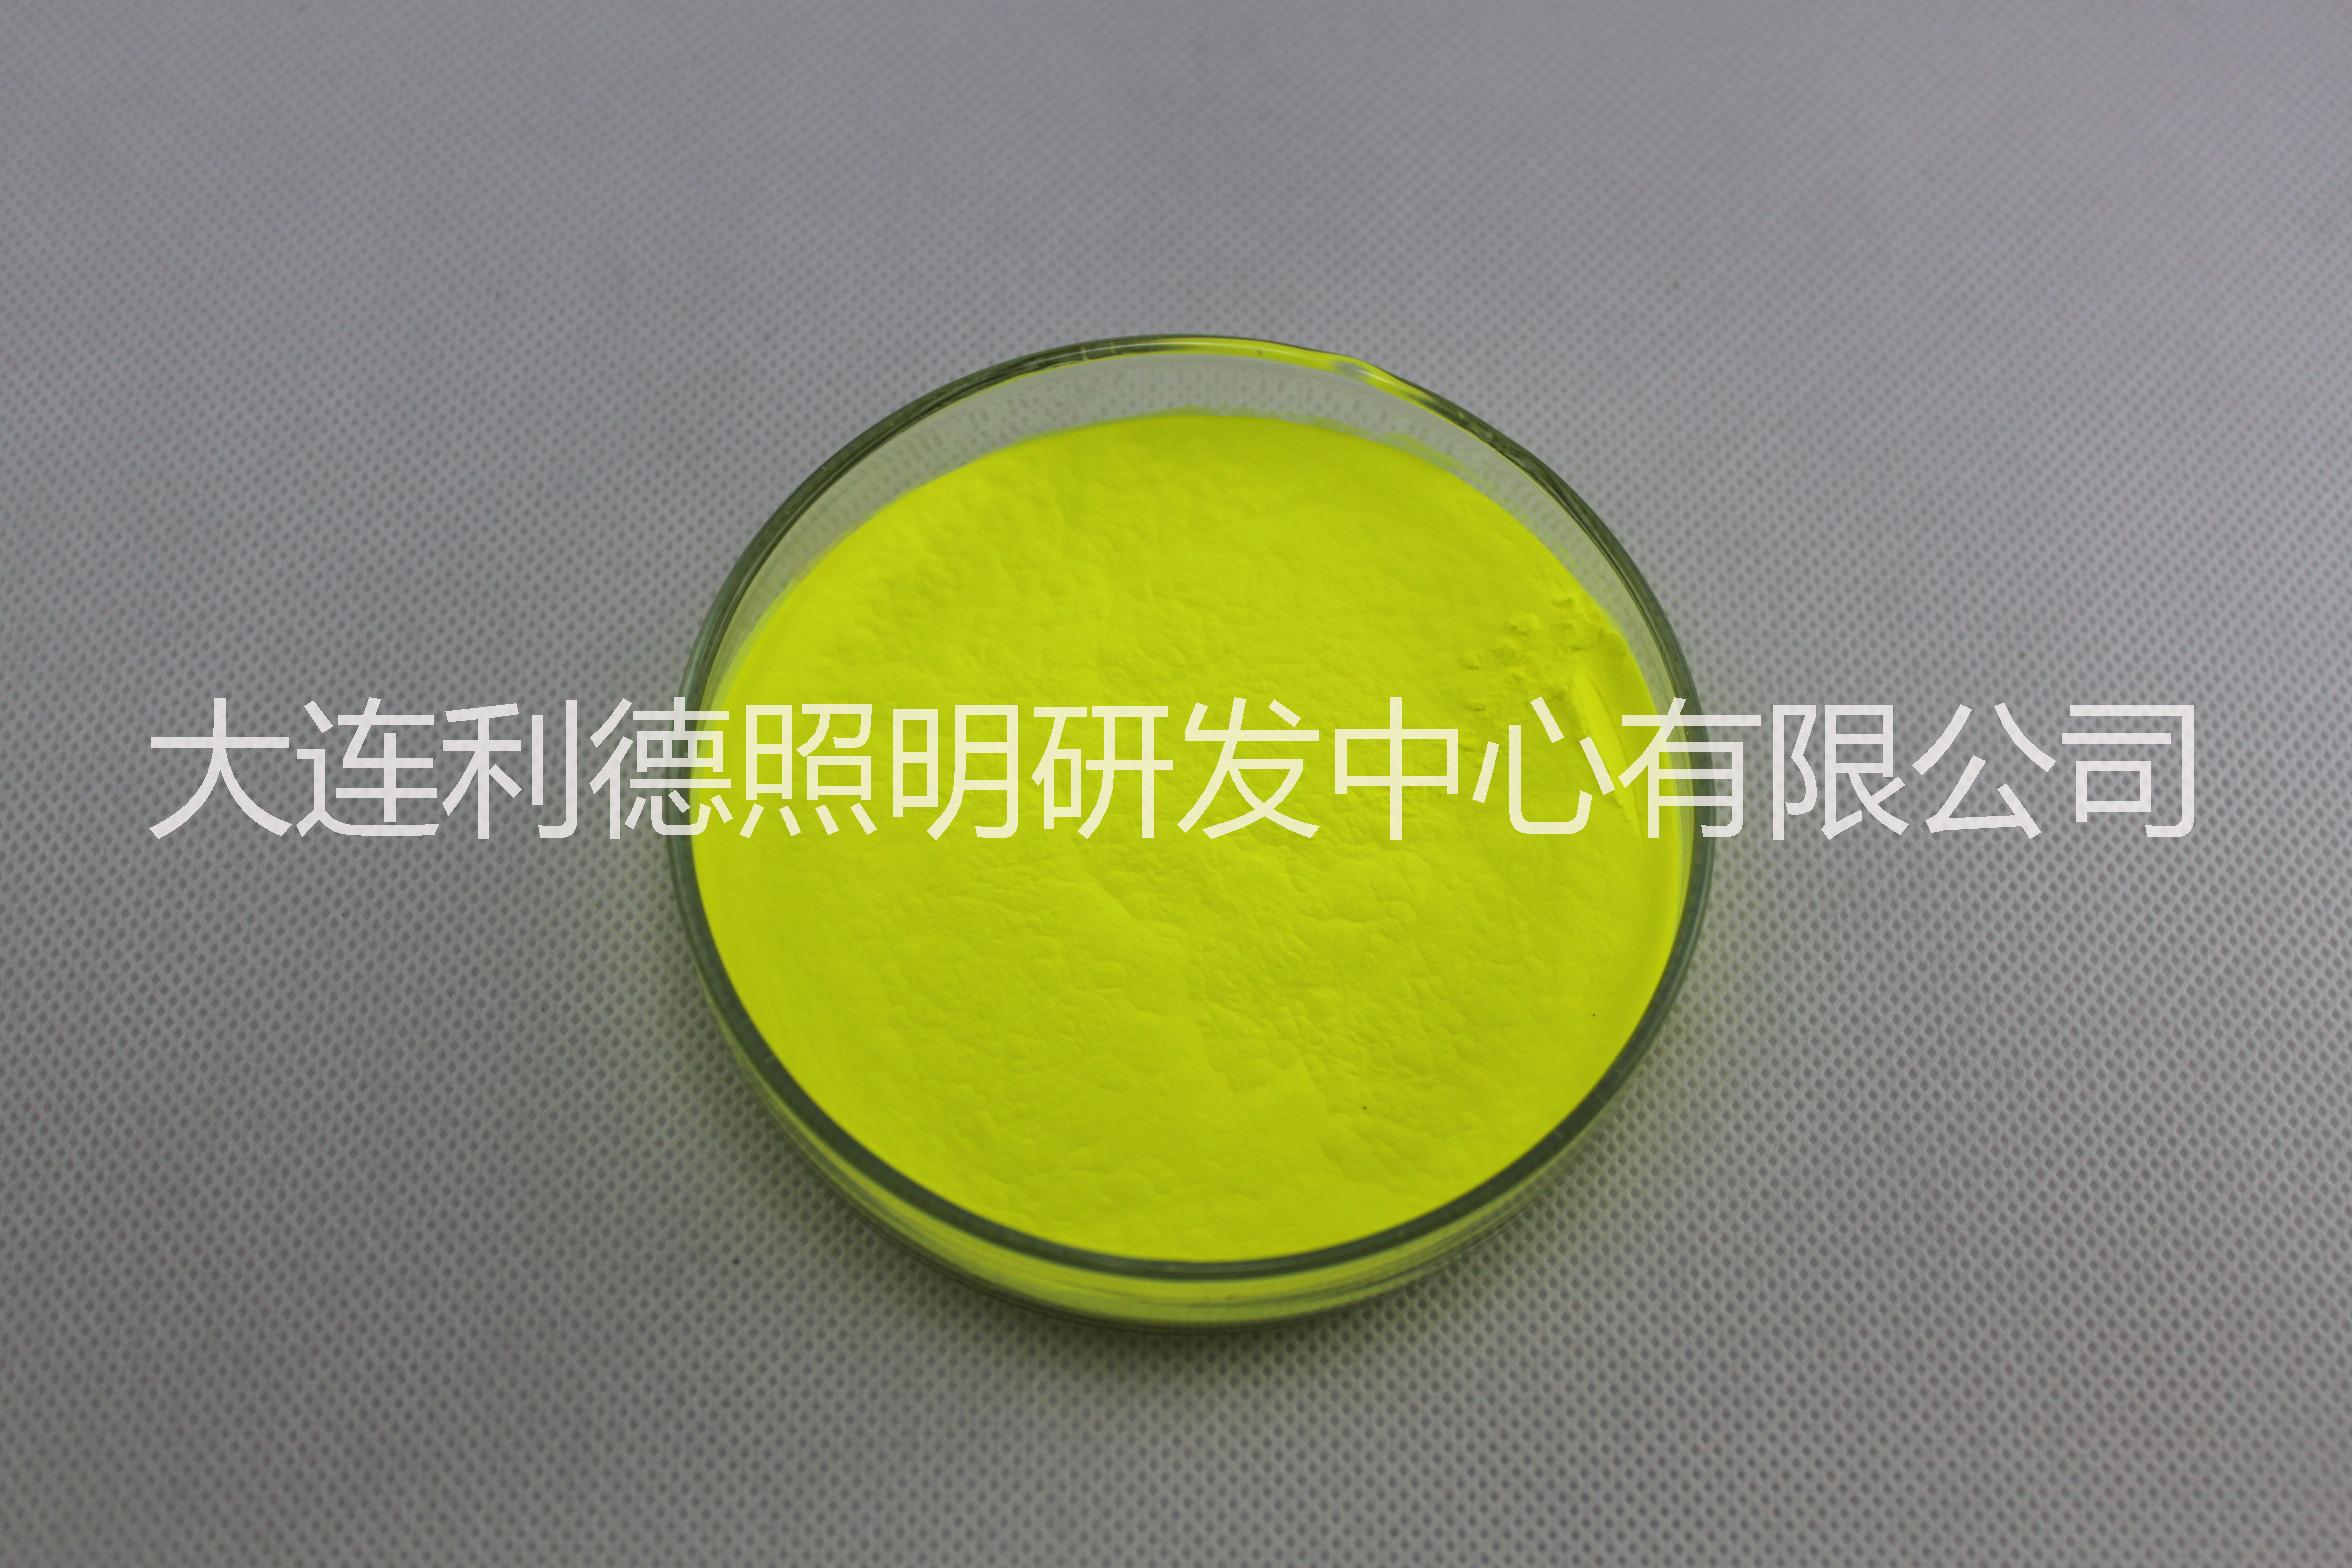 镓酸盐荧光粉YAGG-3856高显指高显色绿色高色温9000K LED荧光粉 绿色荧光粉